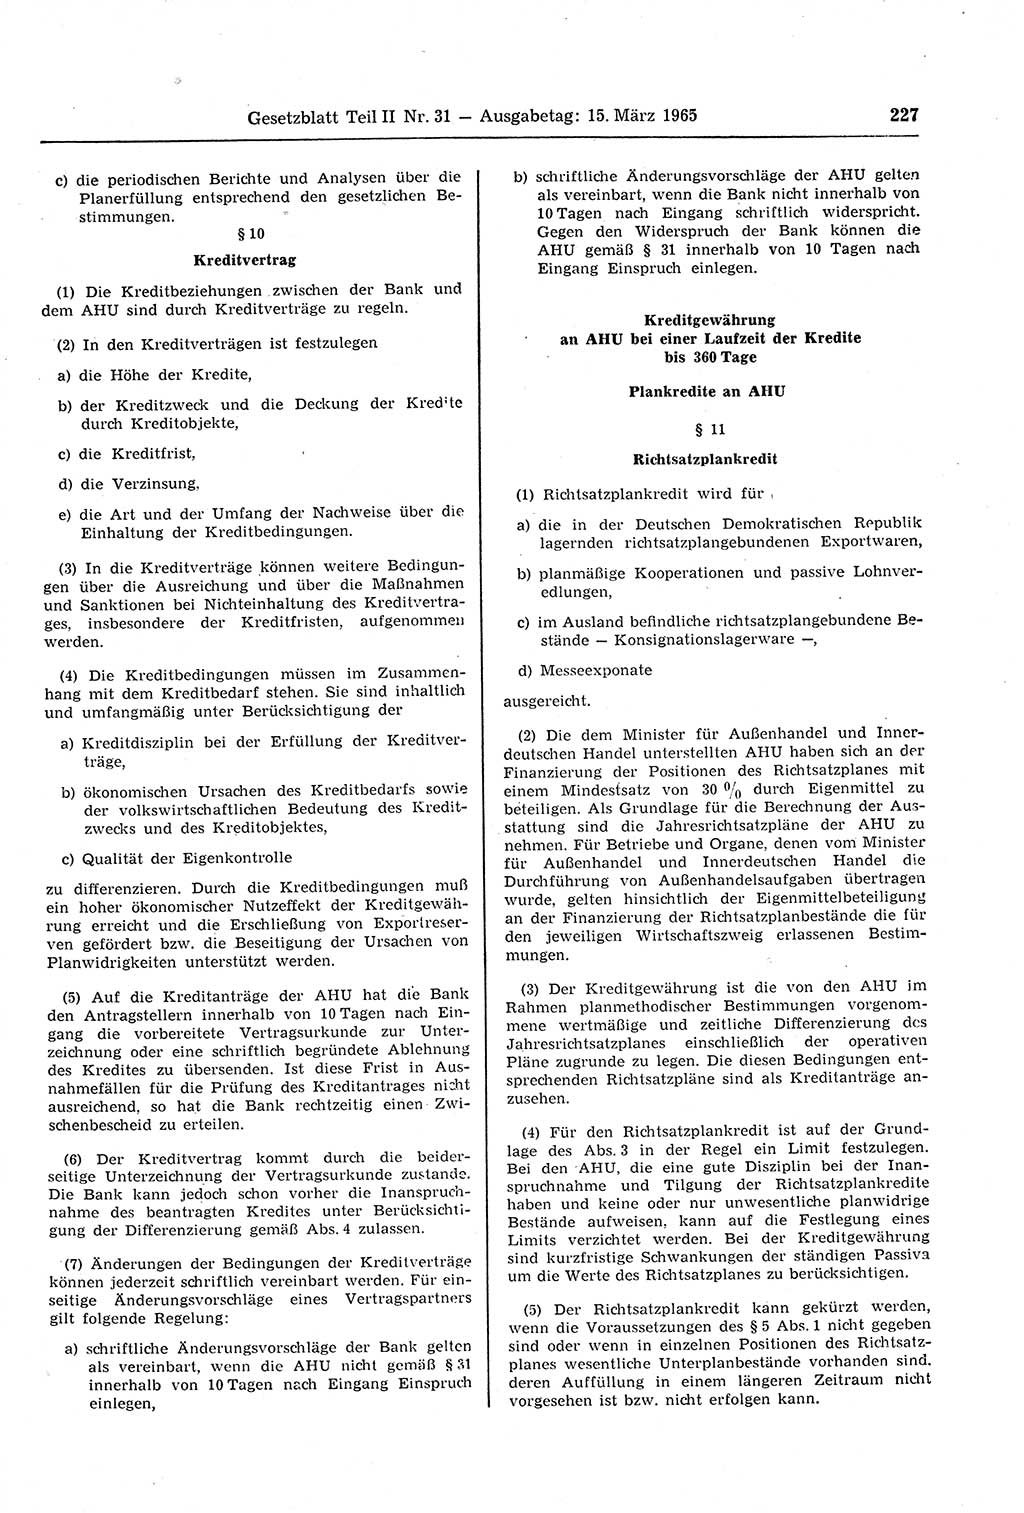 Gesetzblatt (GBl.) der Deutschen Demokratischen Republik (DDR) Teil ⅠⅠ 1965, Seite 227 (GBl. DDR ⅠⅠ 1965, S. 227)